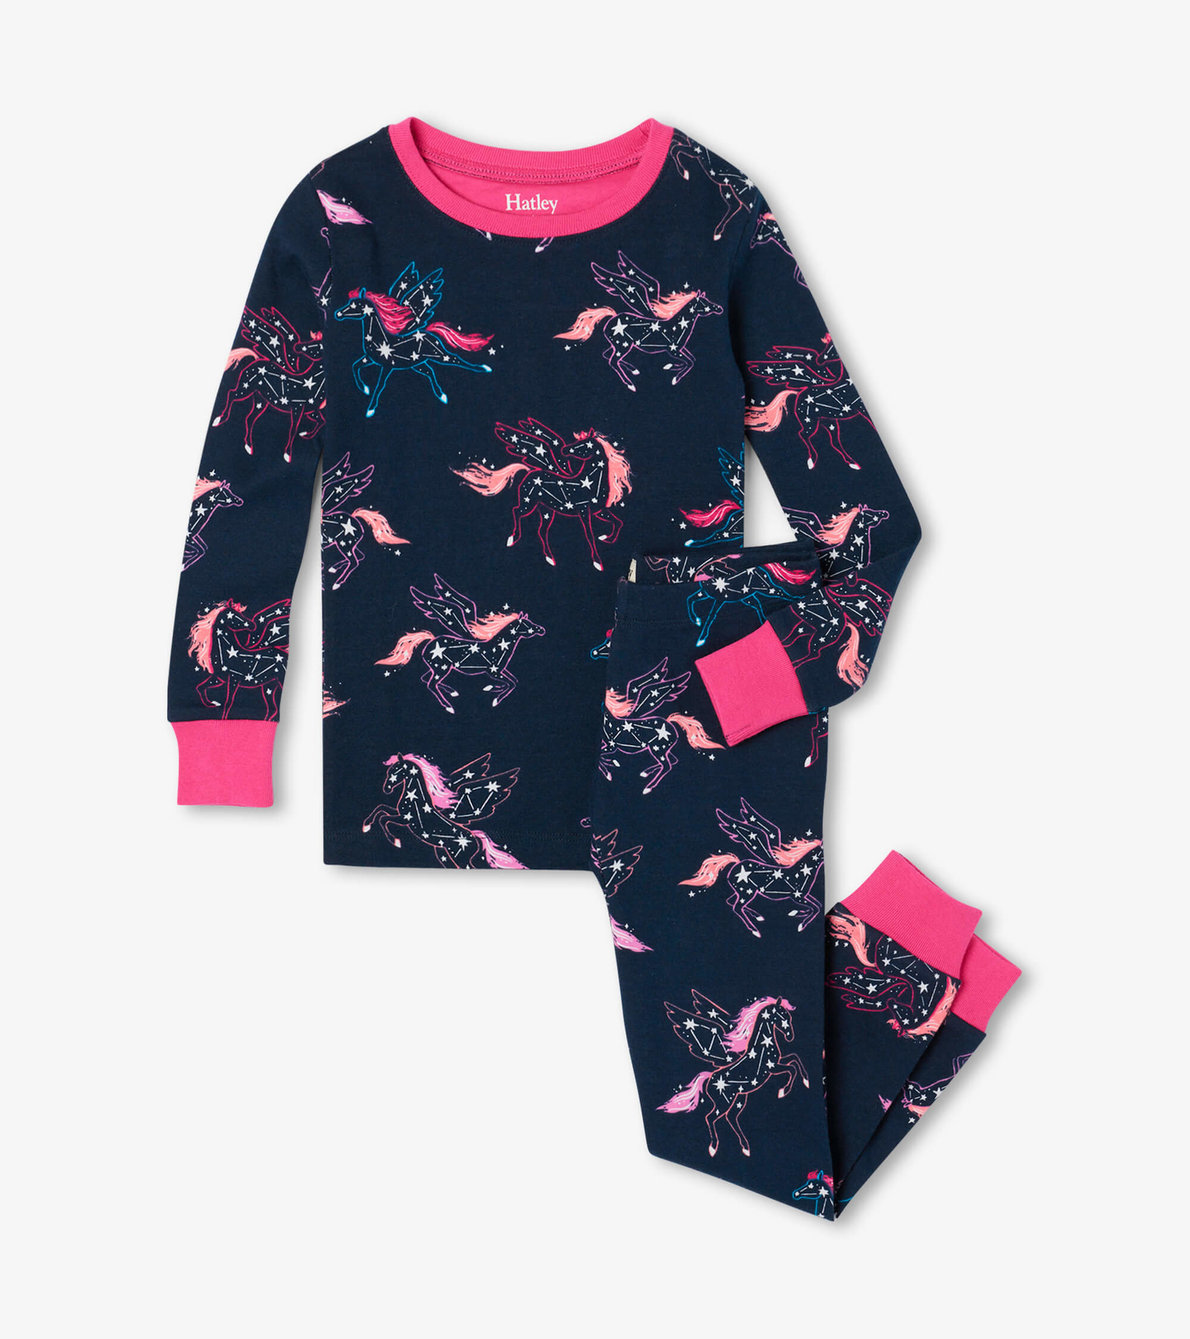 View larger image of Unicorn Constellations Organic Cotton Raglan Kids Pajama Set